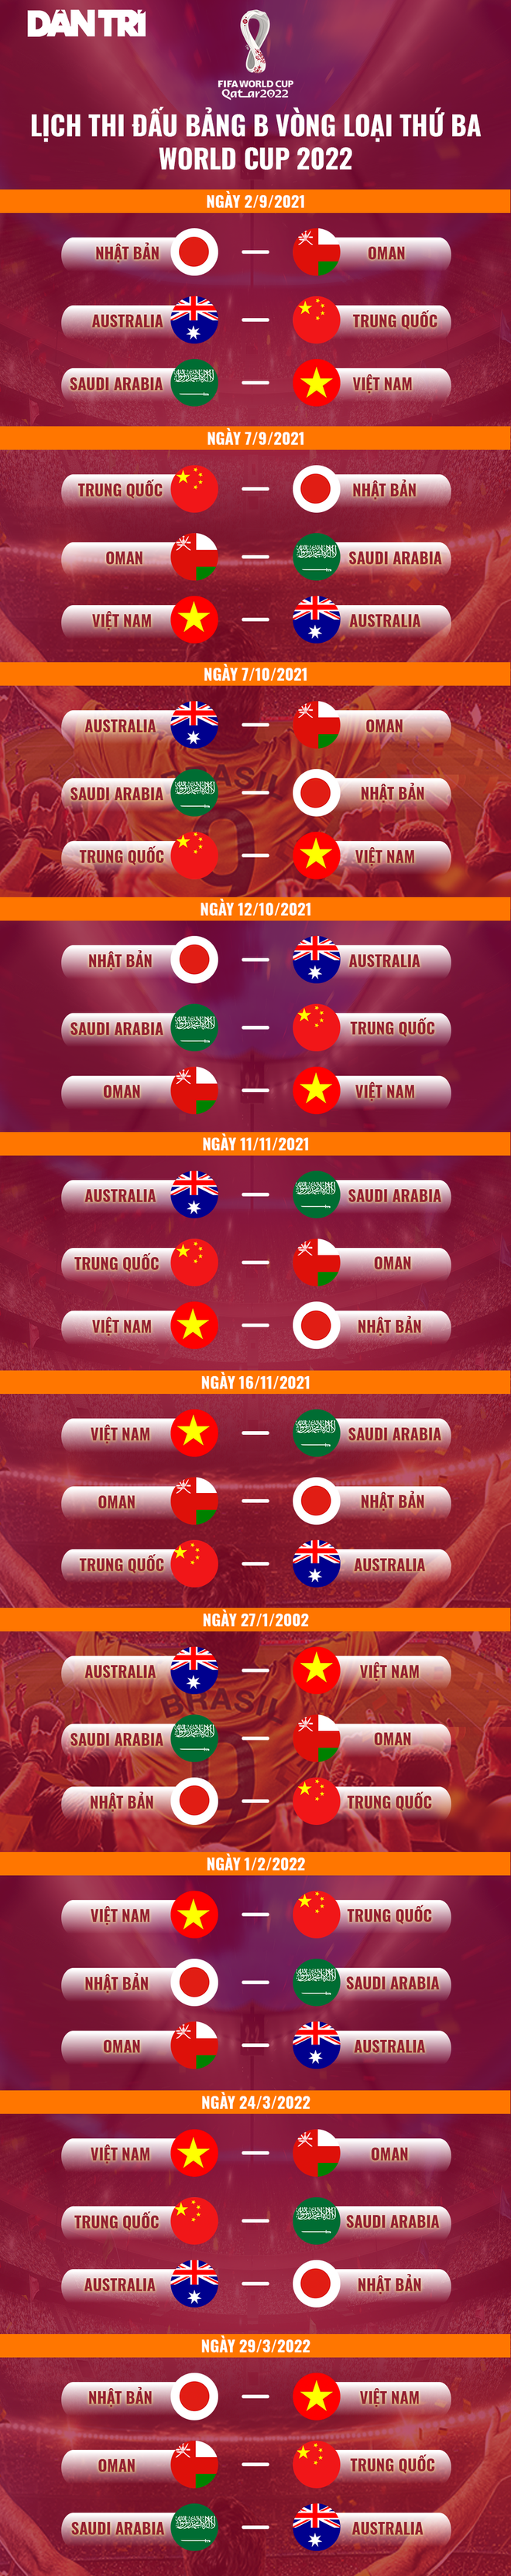 VFF lên kế hoạch cho vòng loại World Cup, tuyển Việt Nam tập trung sớm - 2